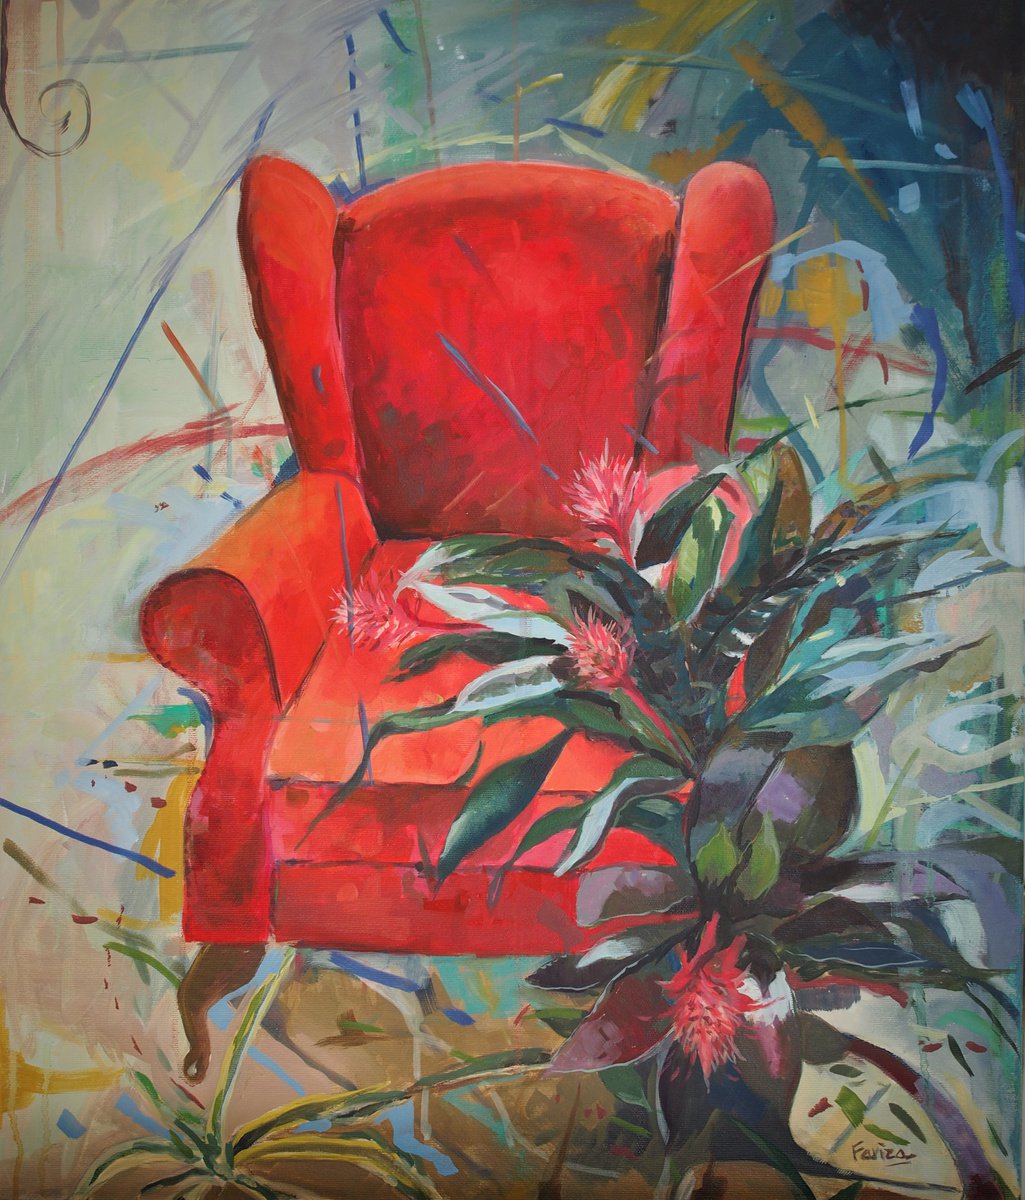 Red armchair by Amaya Fern�ndez Fariza